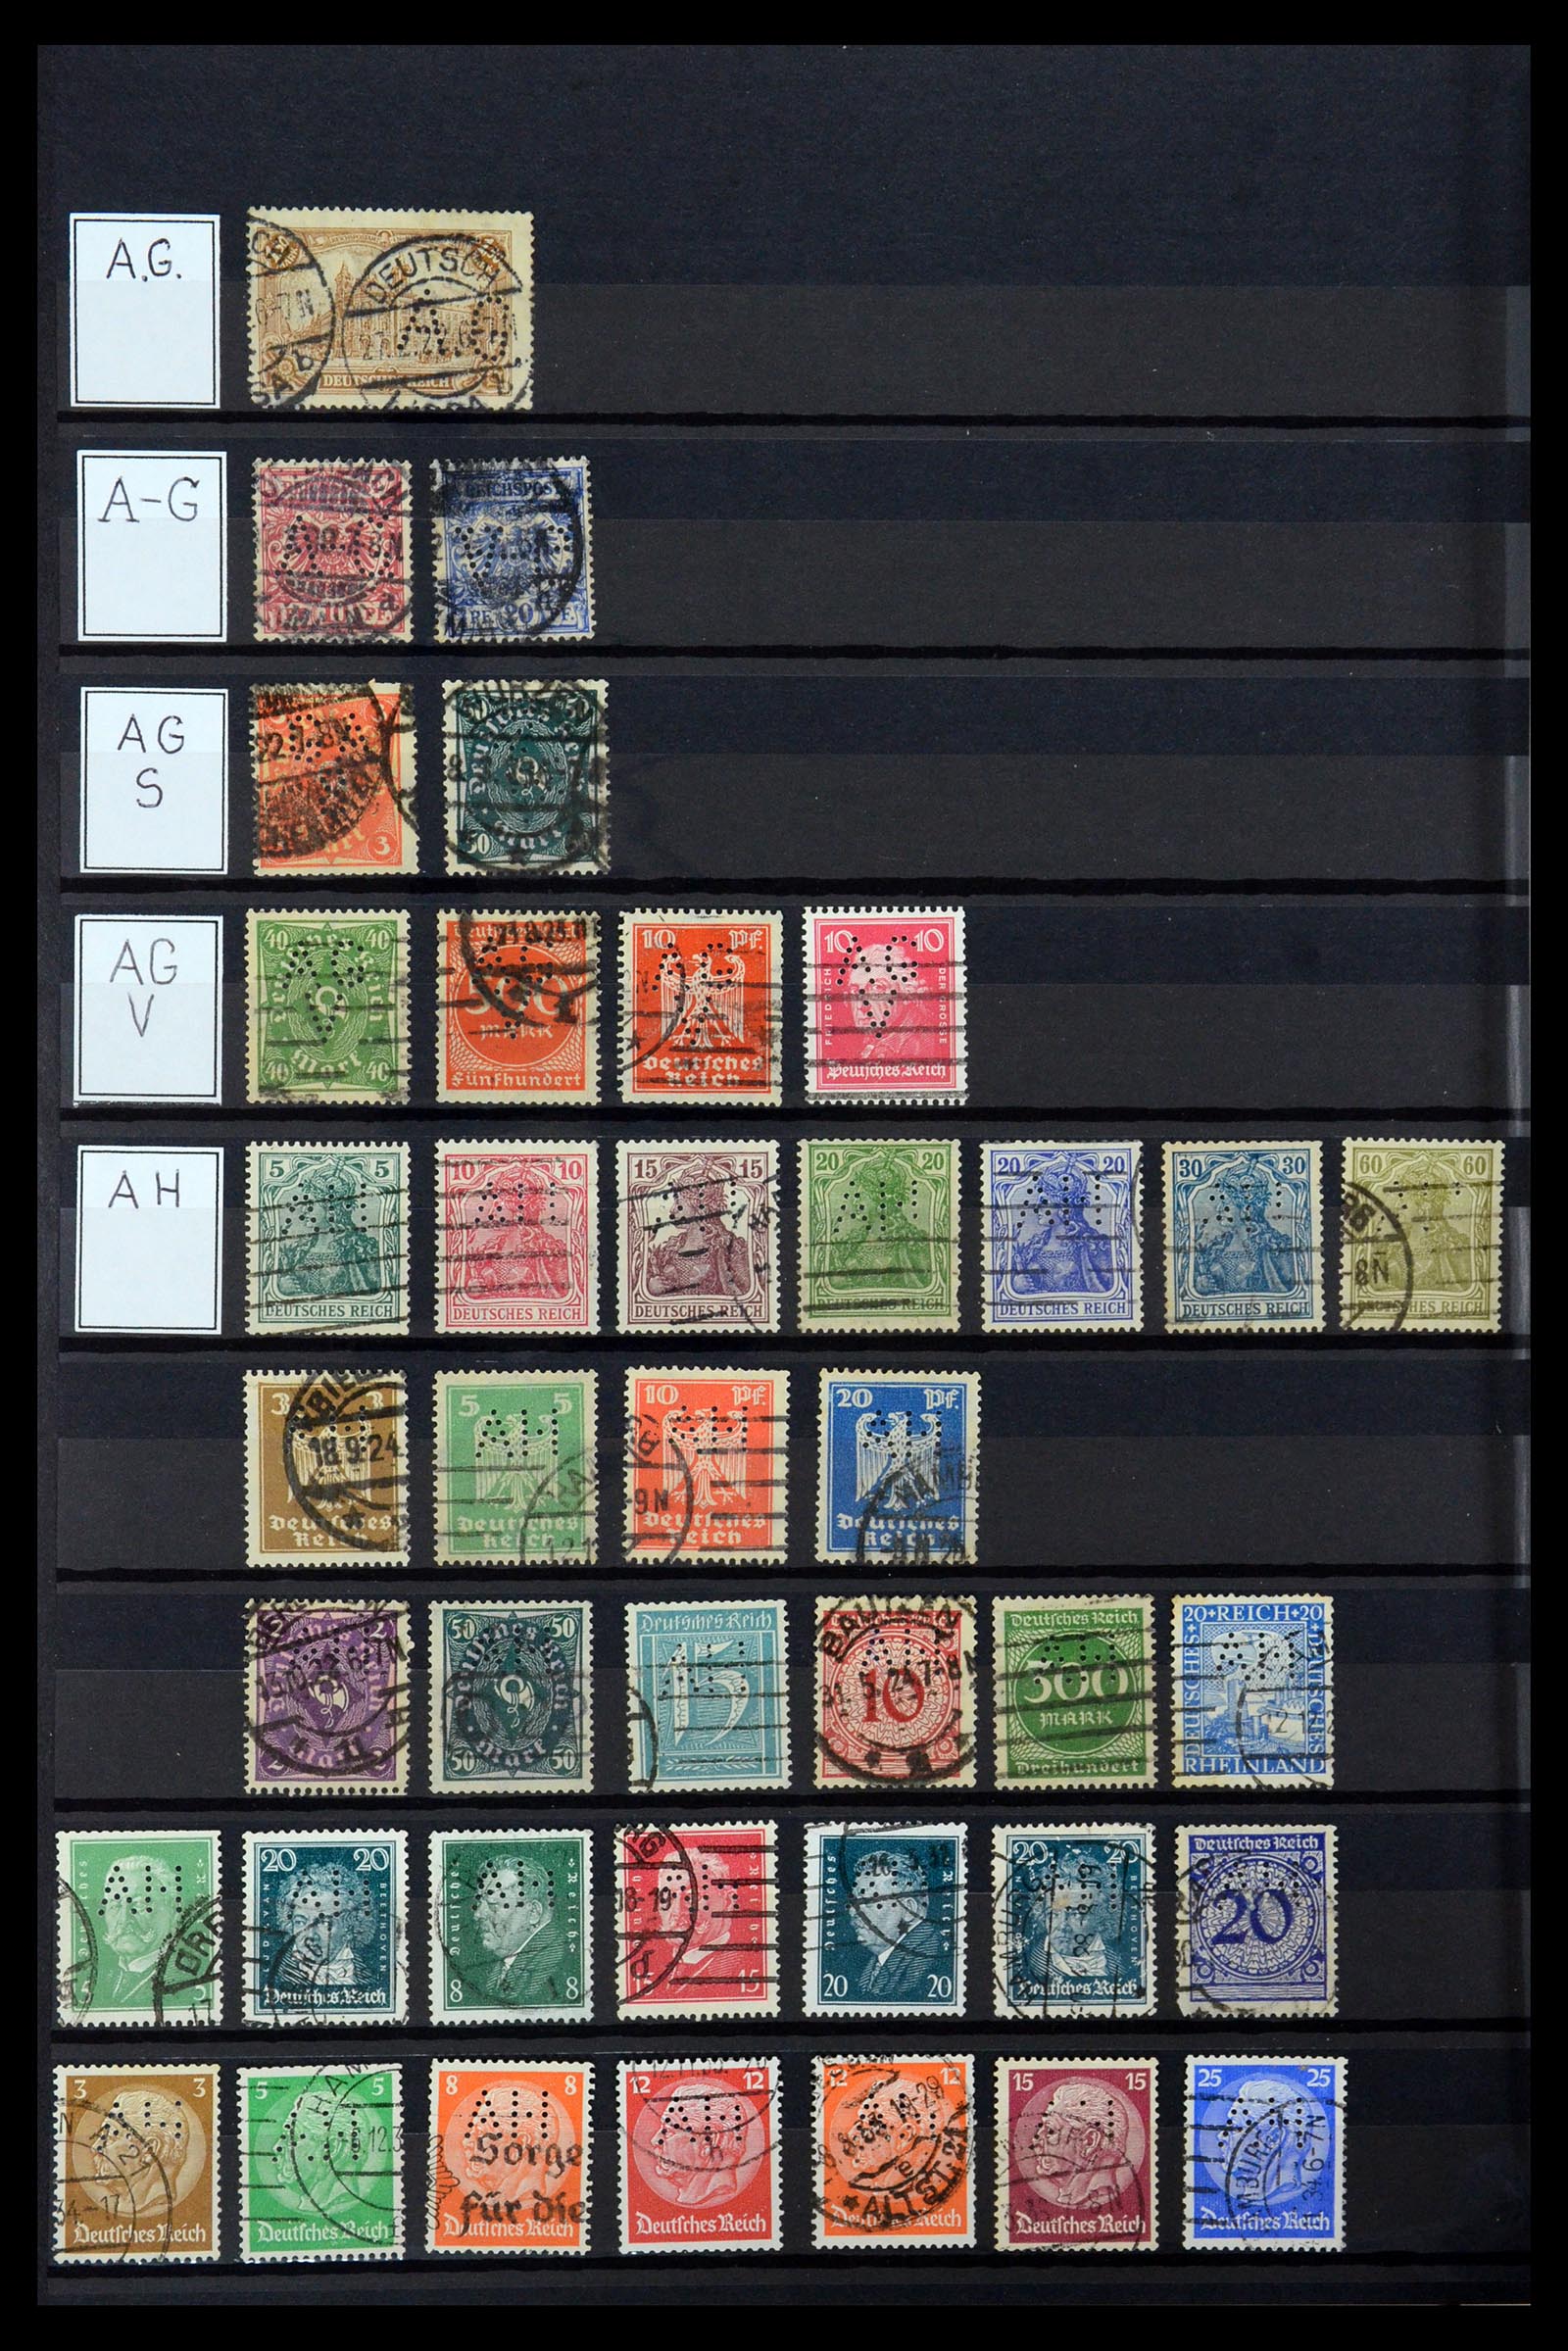 36405 014 - Stamp collection 36405 German Reich perfins 1880-1945.